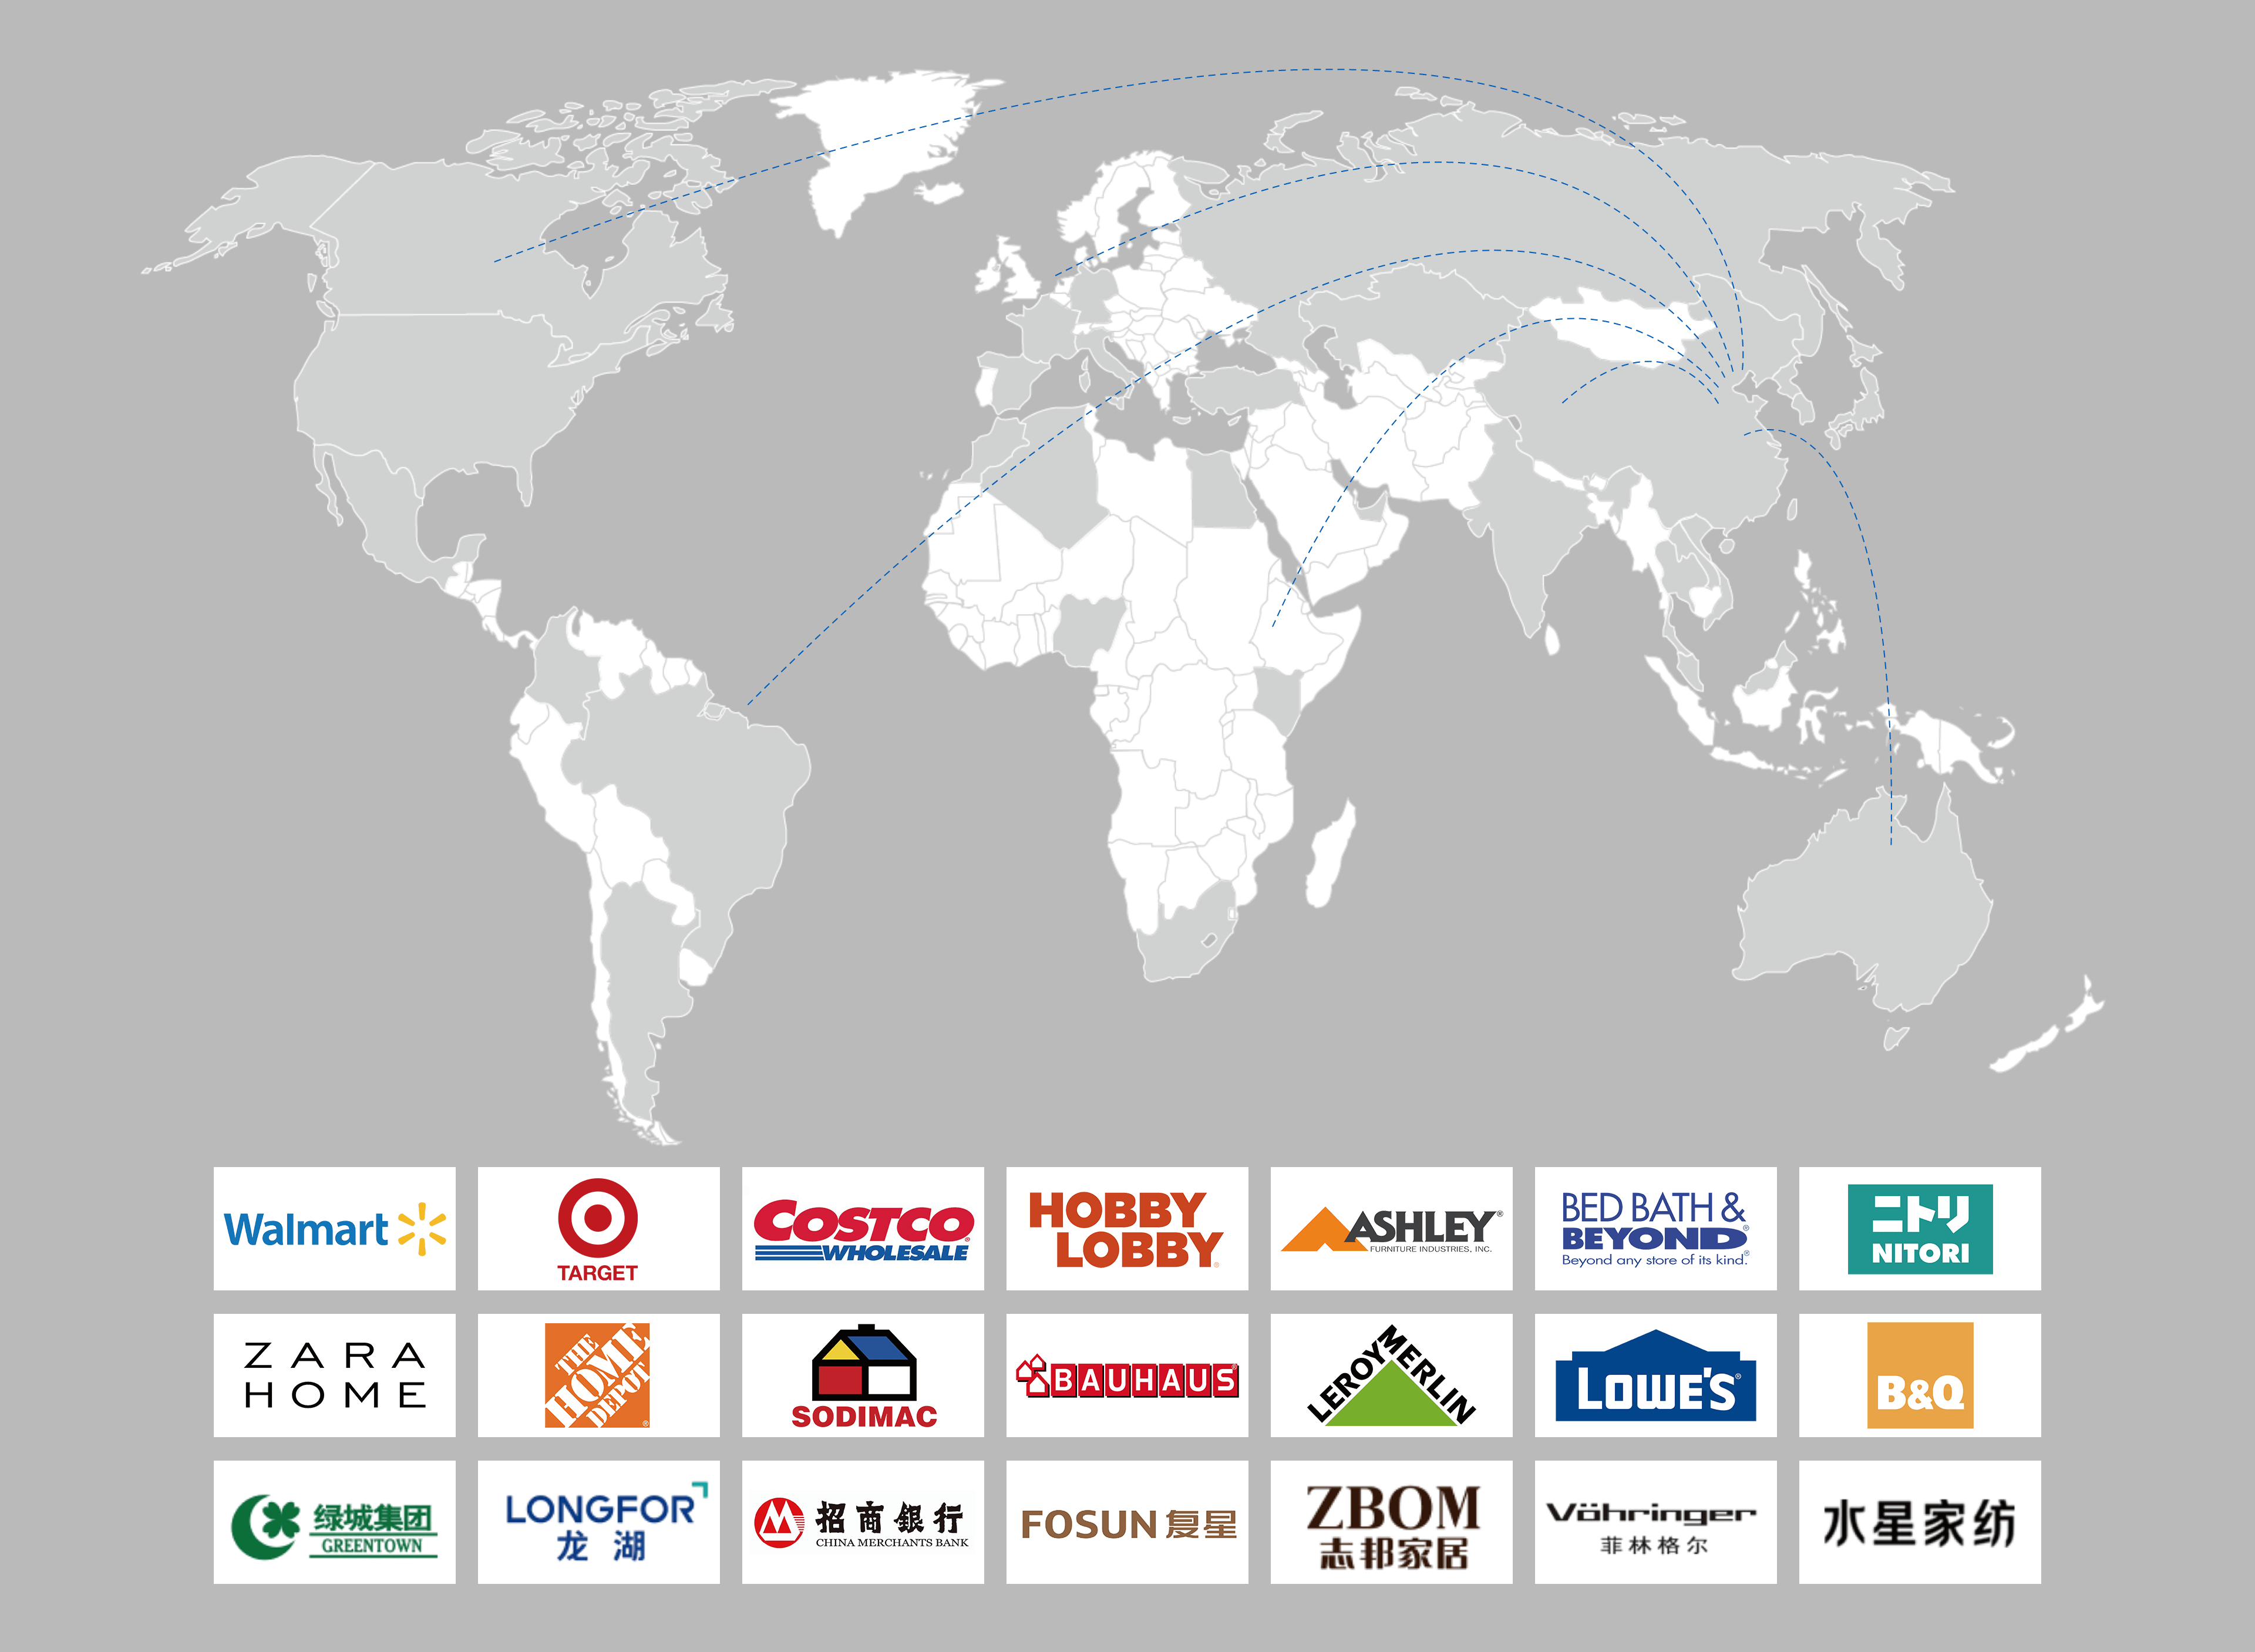 英科产品远销海内外120多个国家和地区。